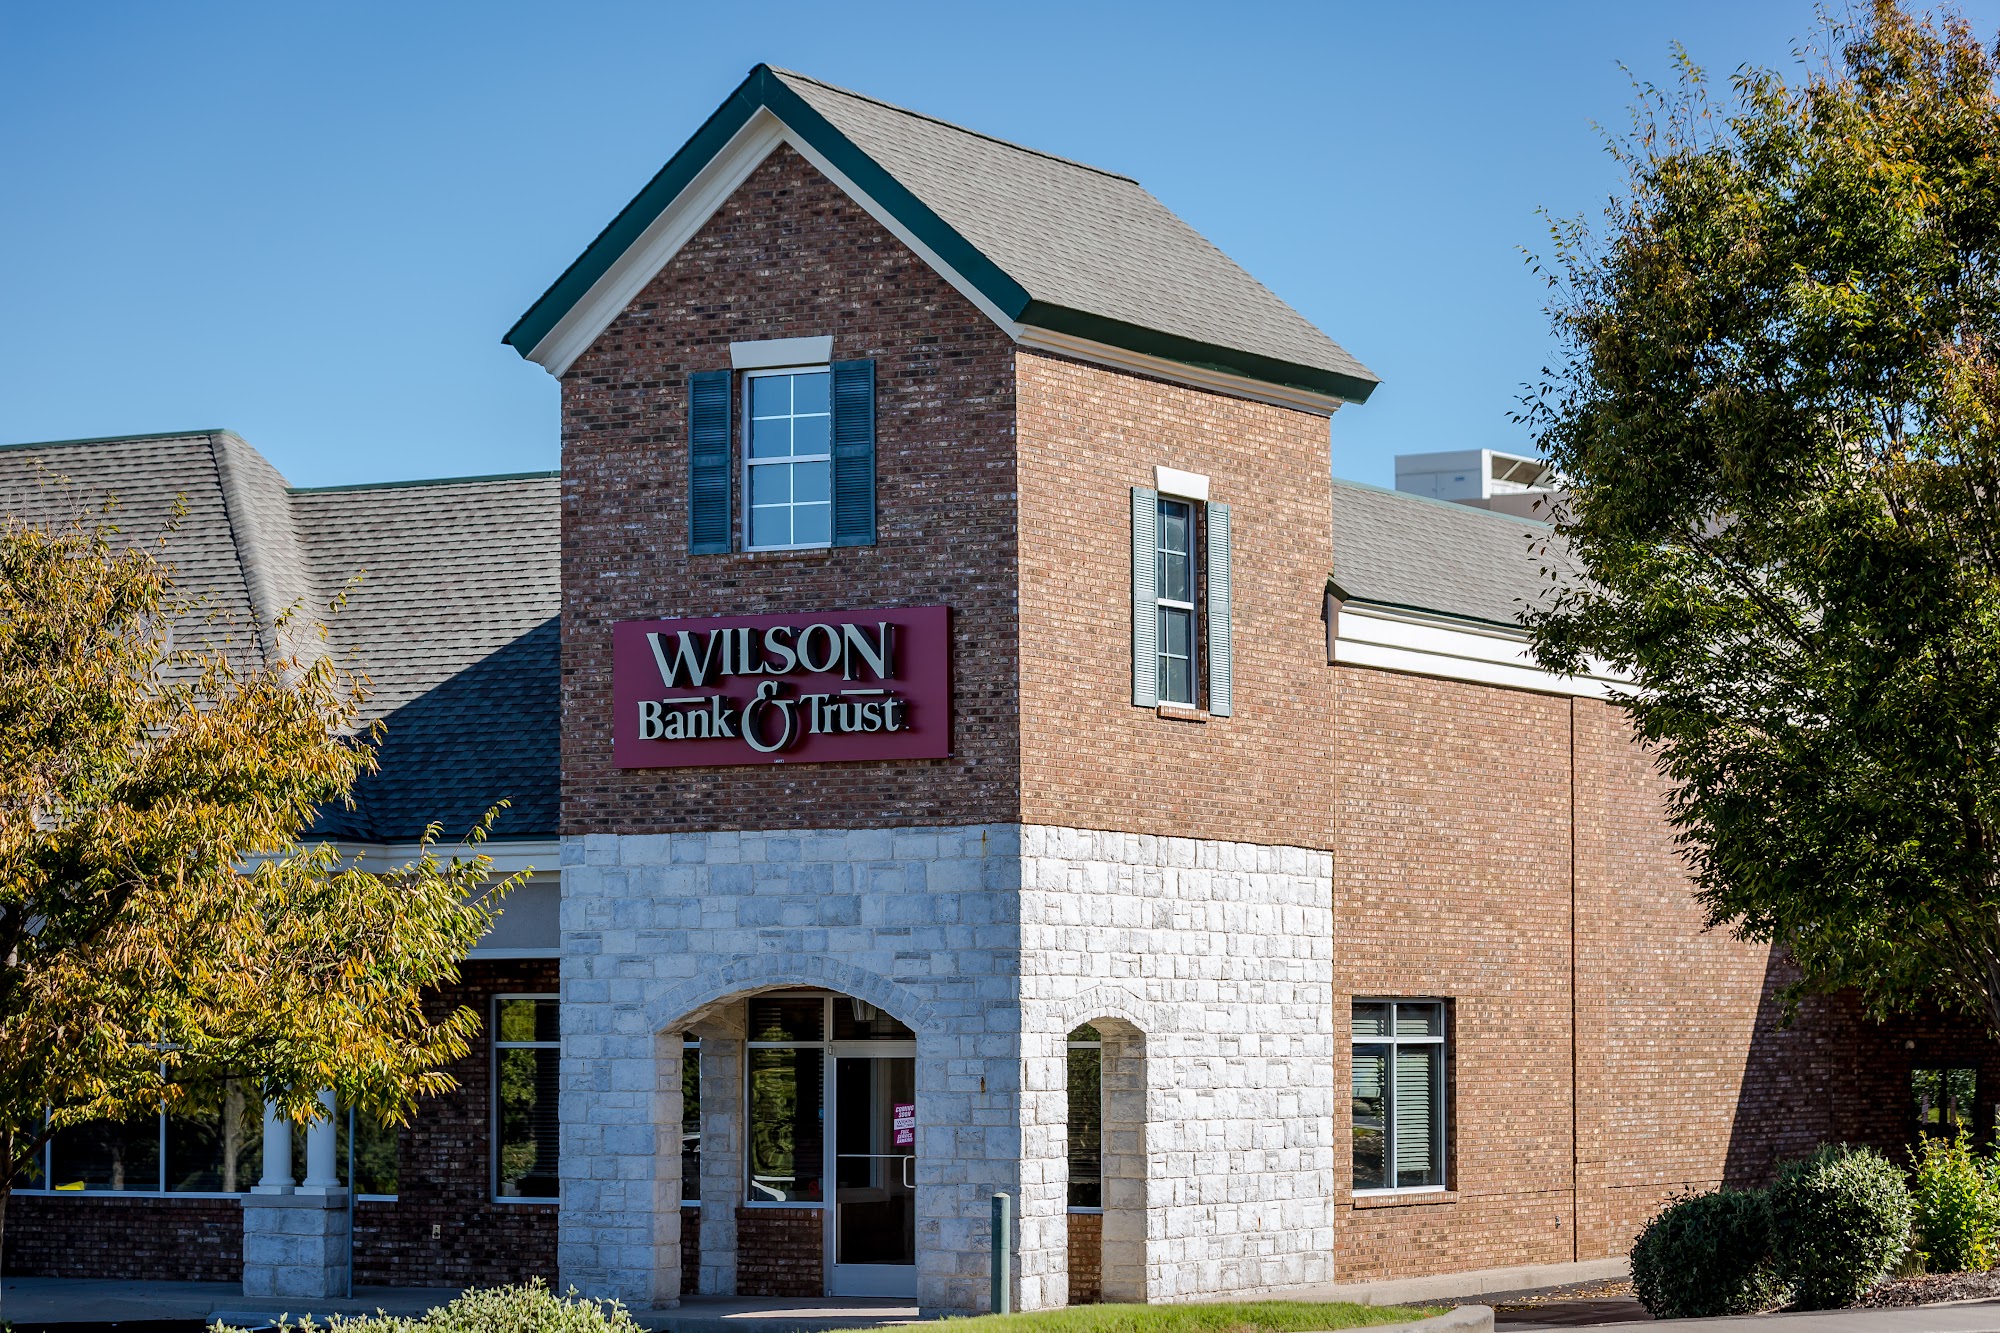 Wilson Bank & Trust